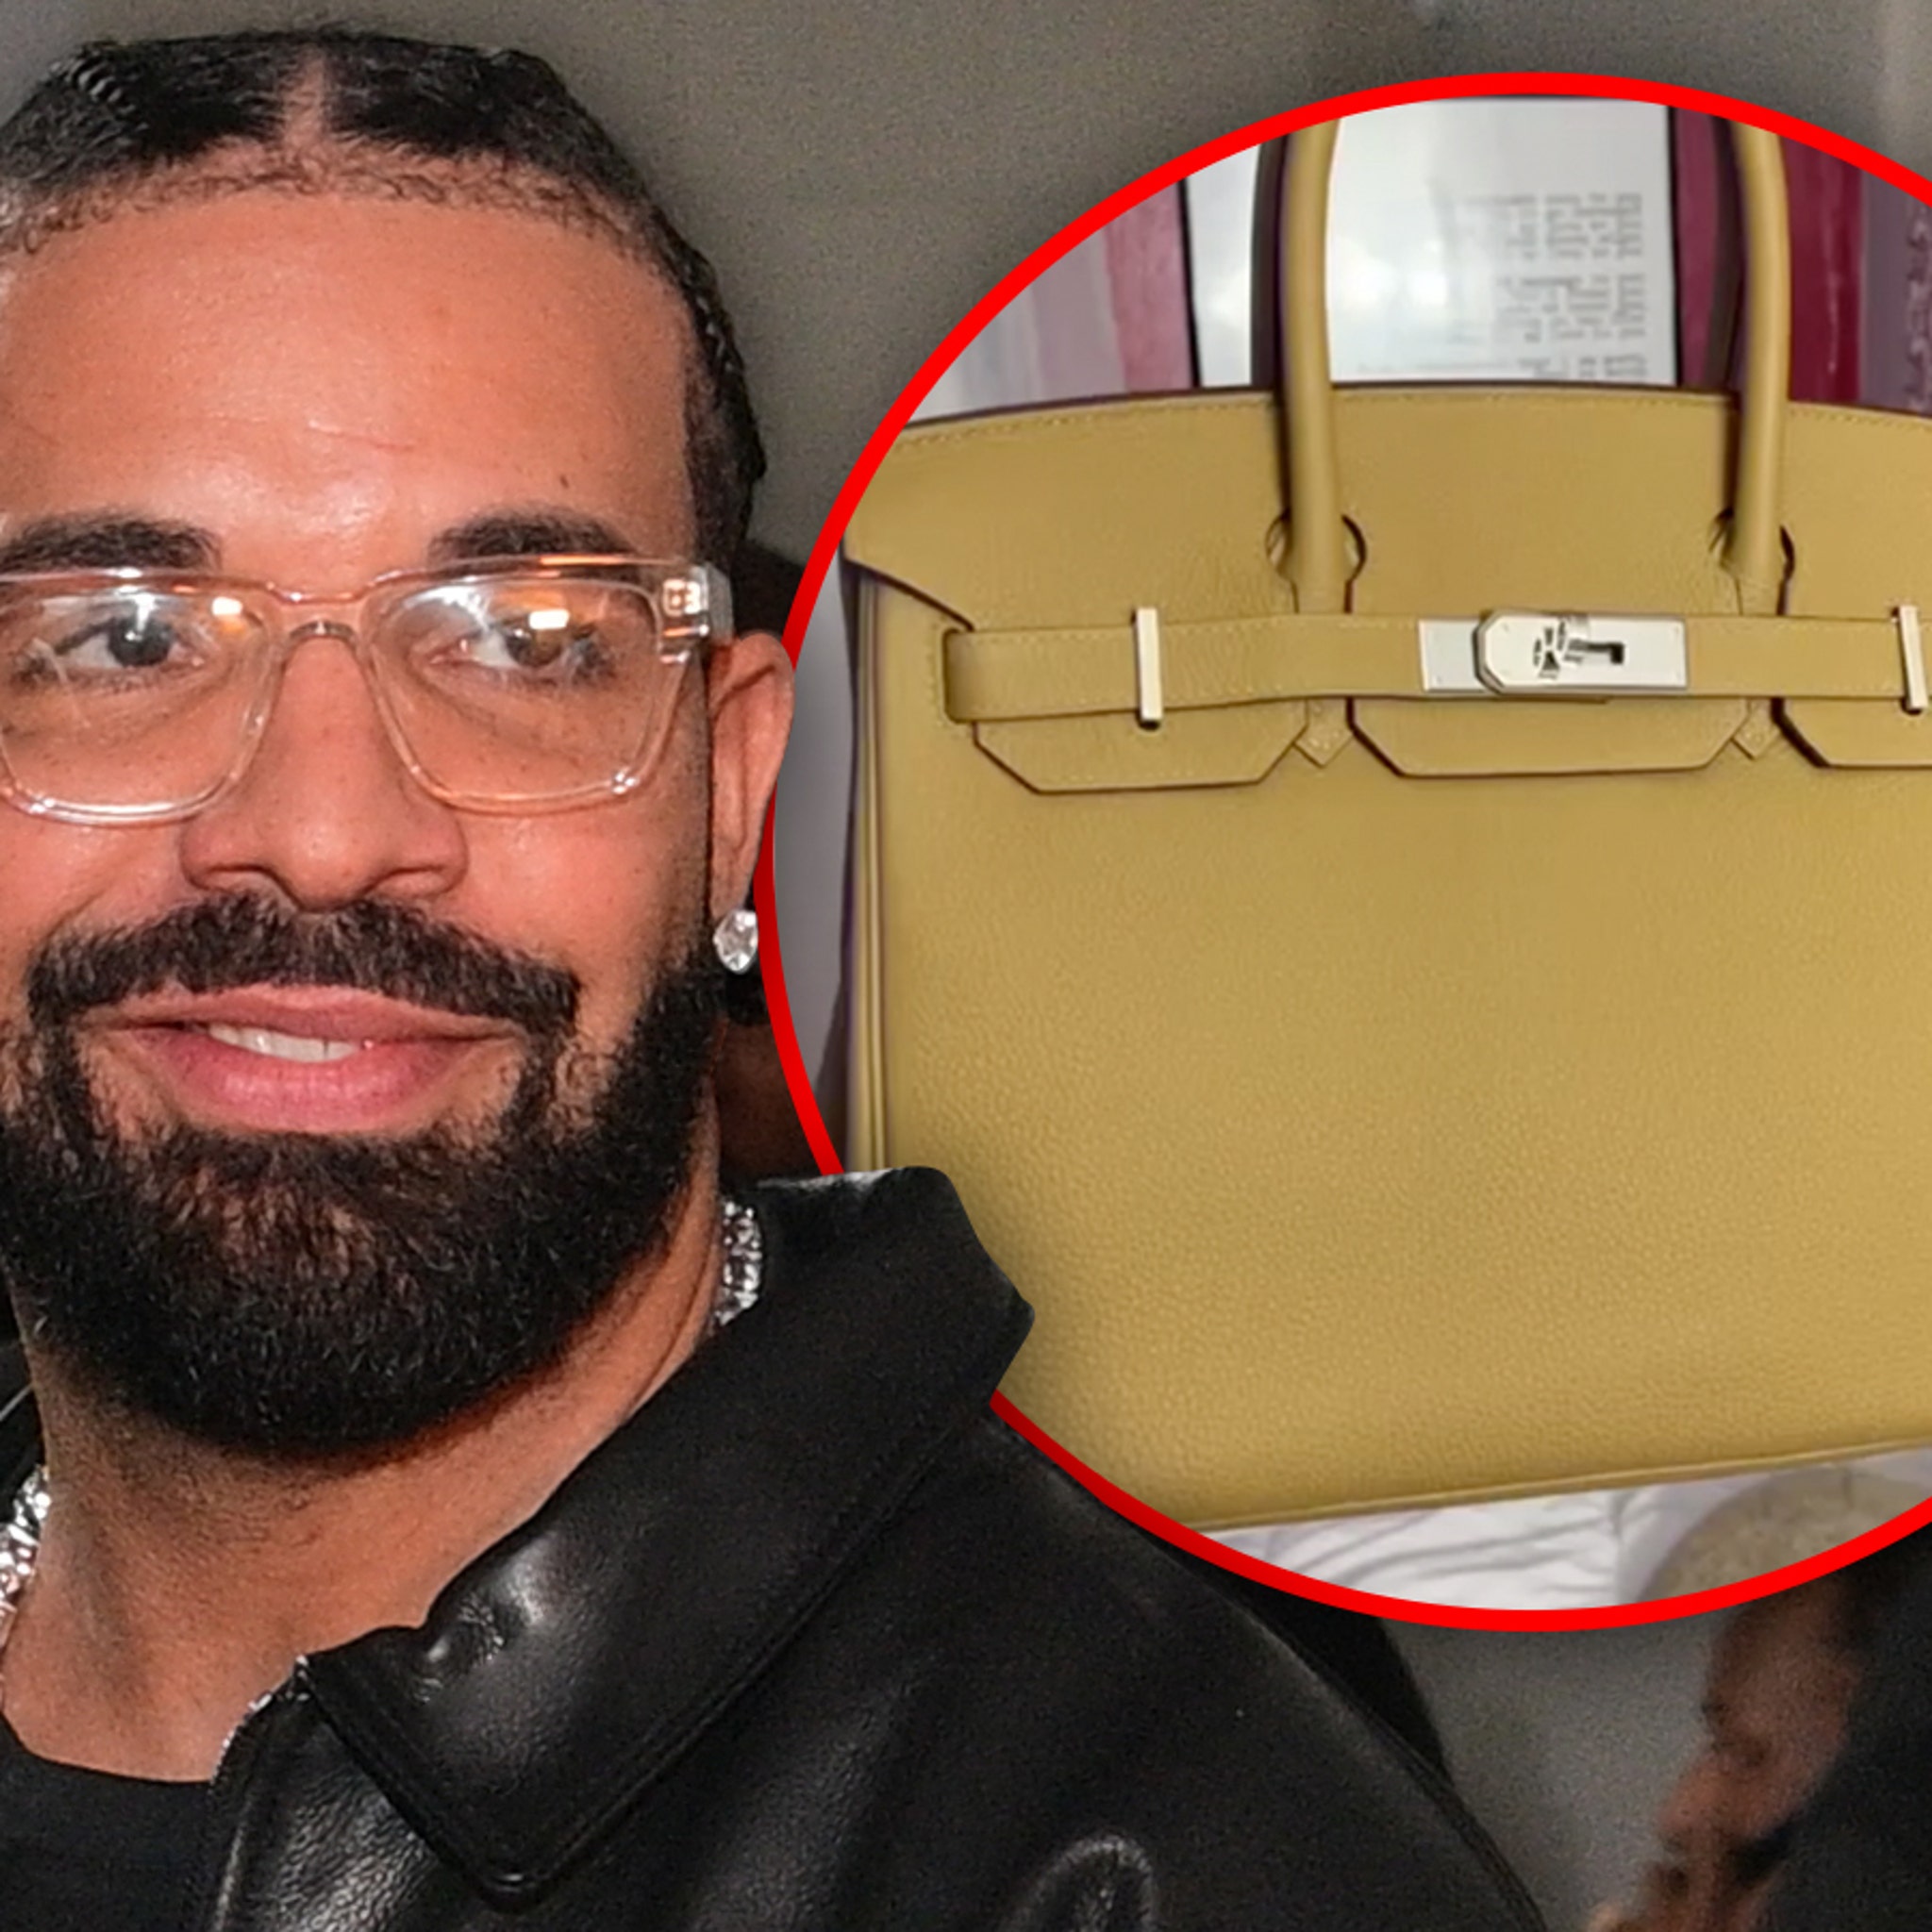 Drake Gifts Fan Pink Birkin Bag During L.A. Concert